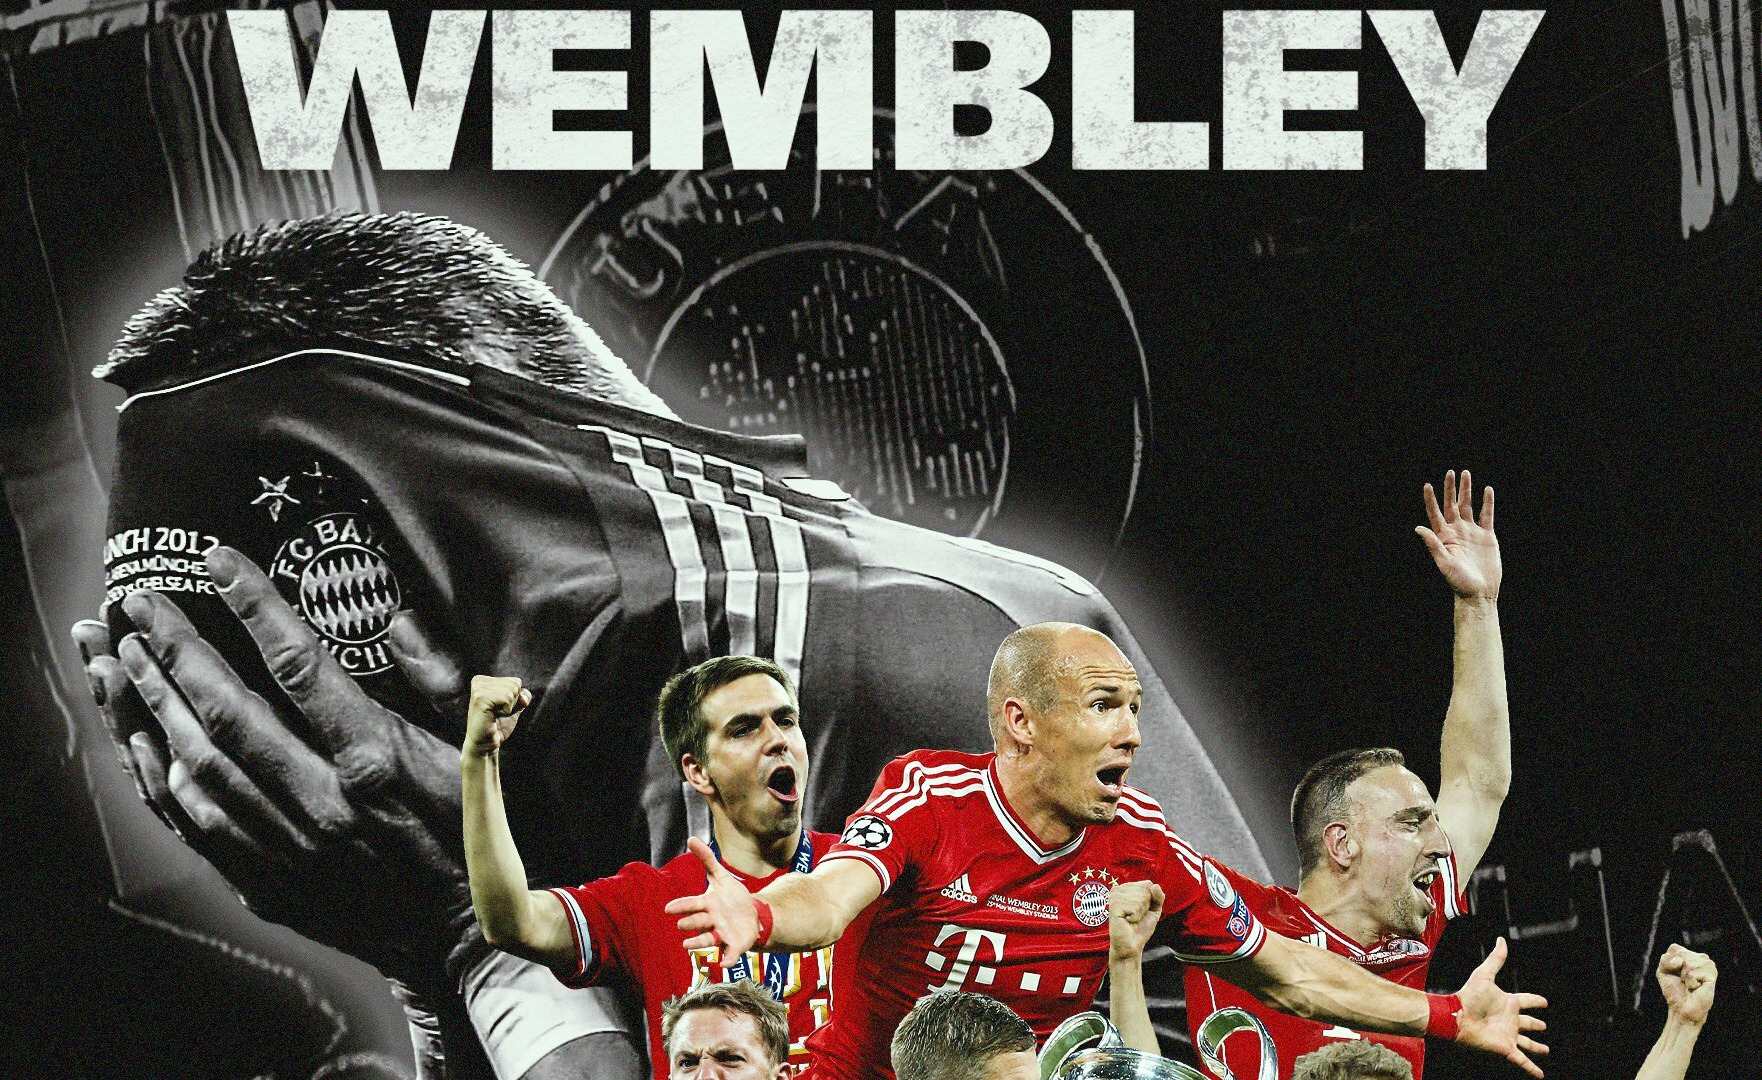 Show FC Bayern - Generation Wembley